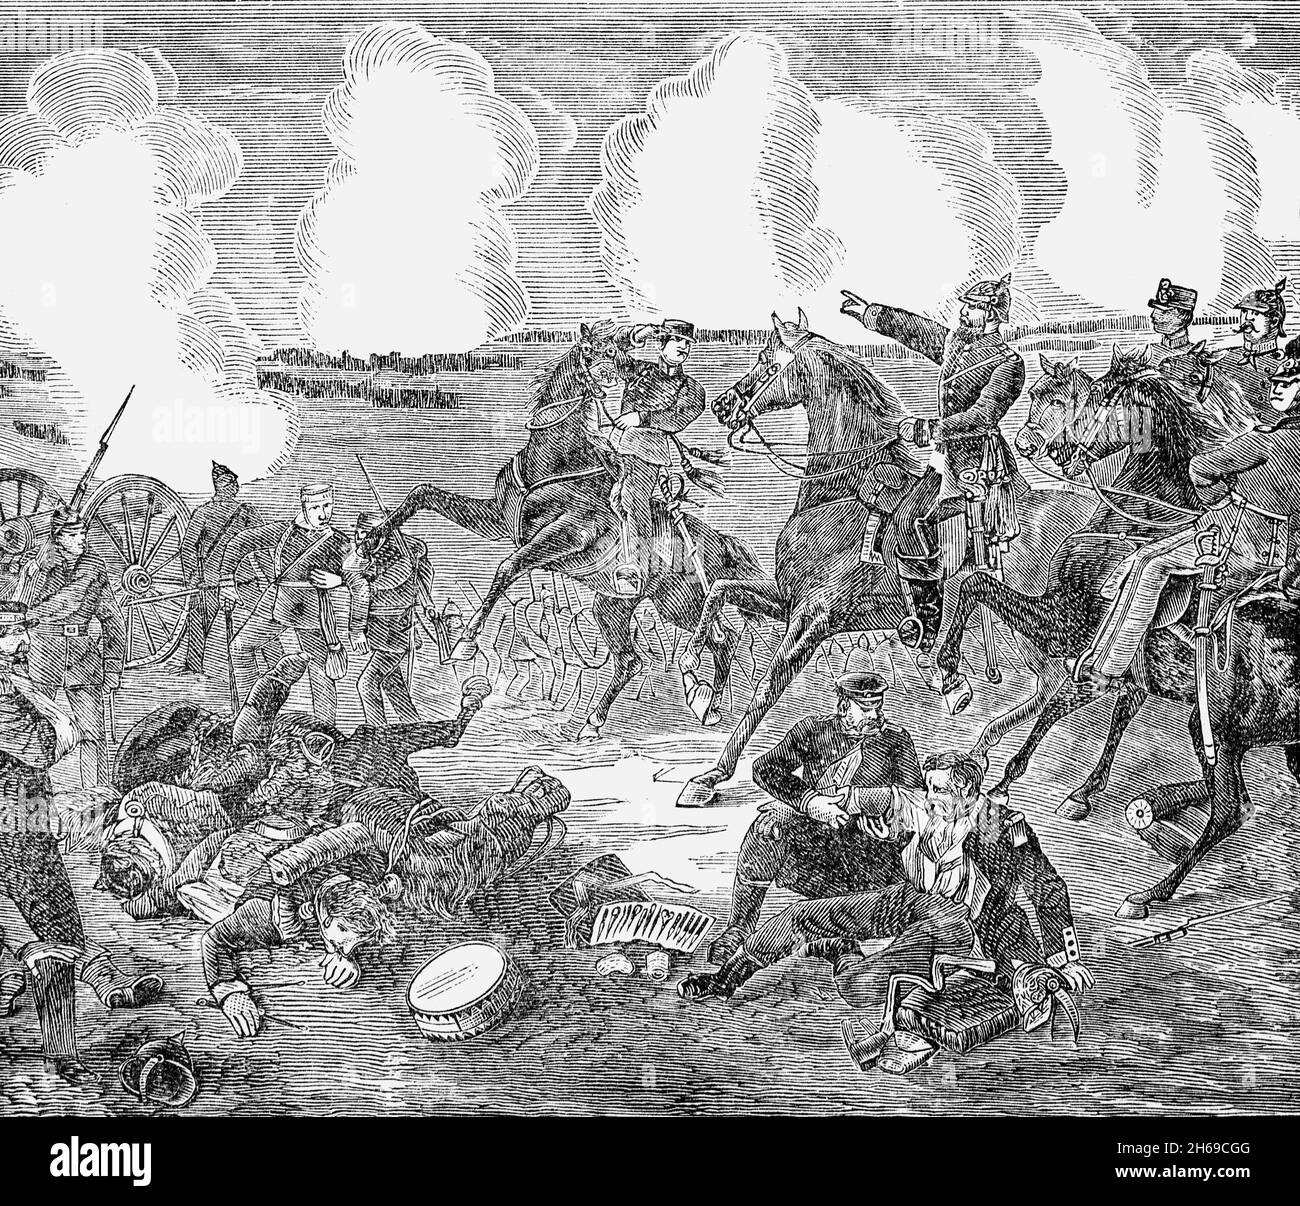 Illustration de la bataille de Gravelotte qui a eu lieu le 18 août 1870, la plus grande bataille de la guerre franco-prussienne.Nommé d'après Gravelotte, village de Lorraine, il a été combattu à environ 10 kilomètres à l'ouest de Metz et a abouti à la destruction complète des forces françaises. Banque D'Images